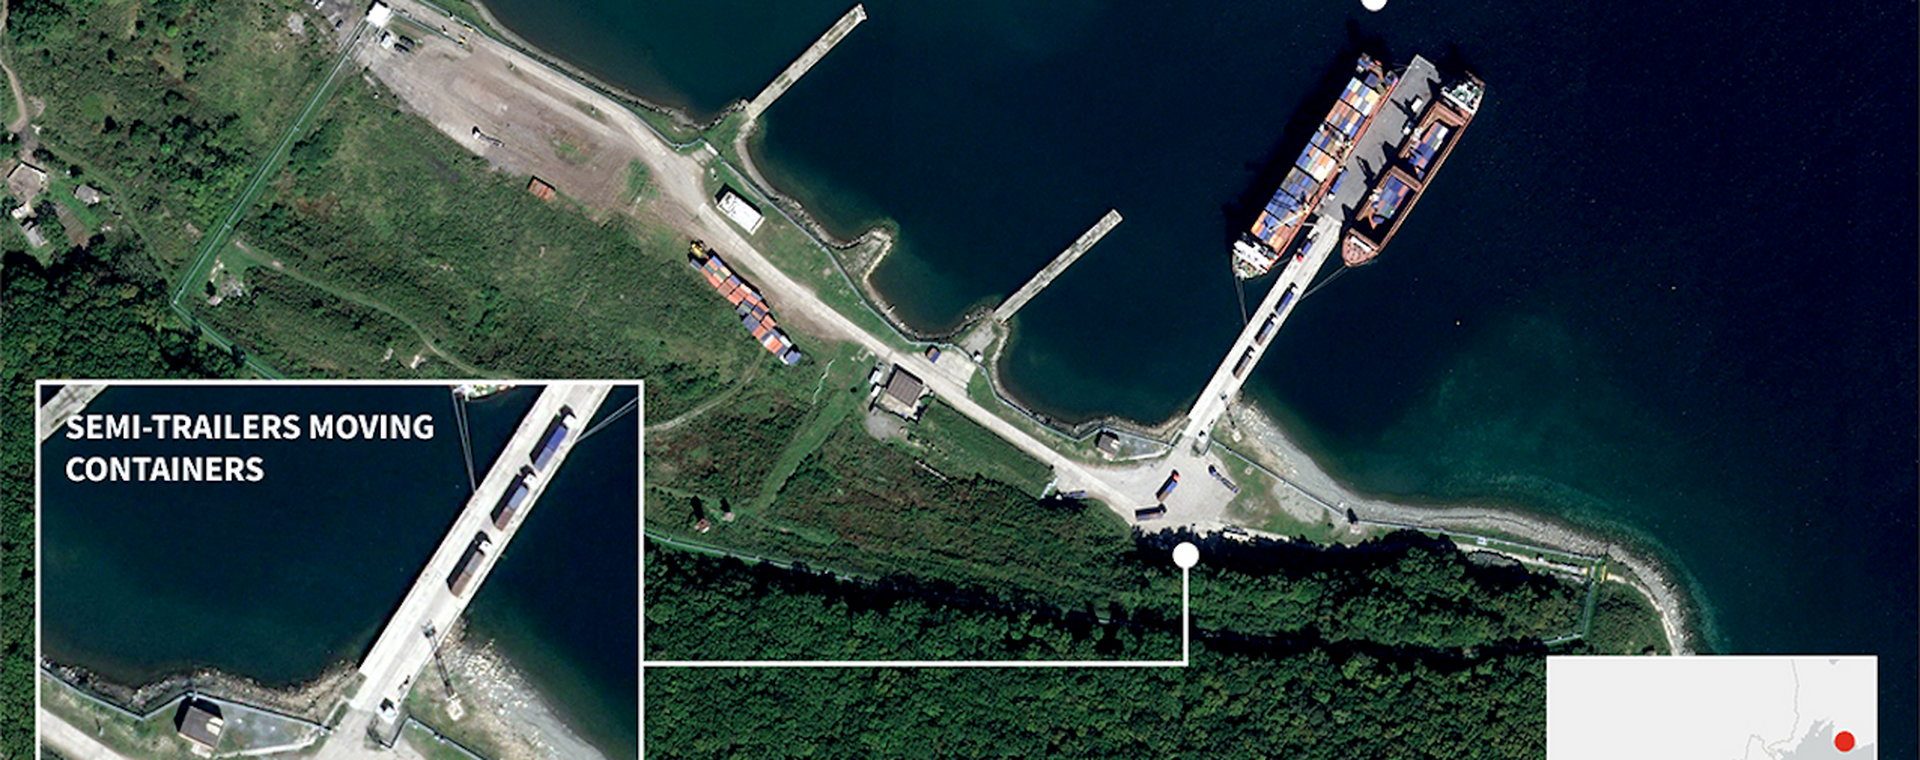 Zdjęcia satelitarne pokazują dwa statki towarowe odbywające wielokrotne podróże między Rosją a Koreą Północną.